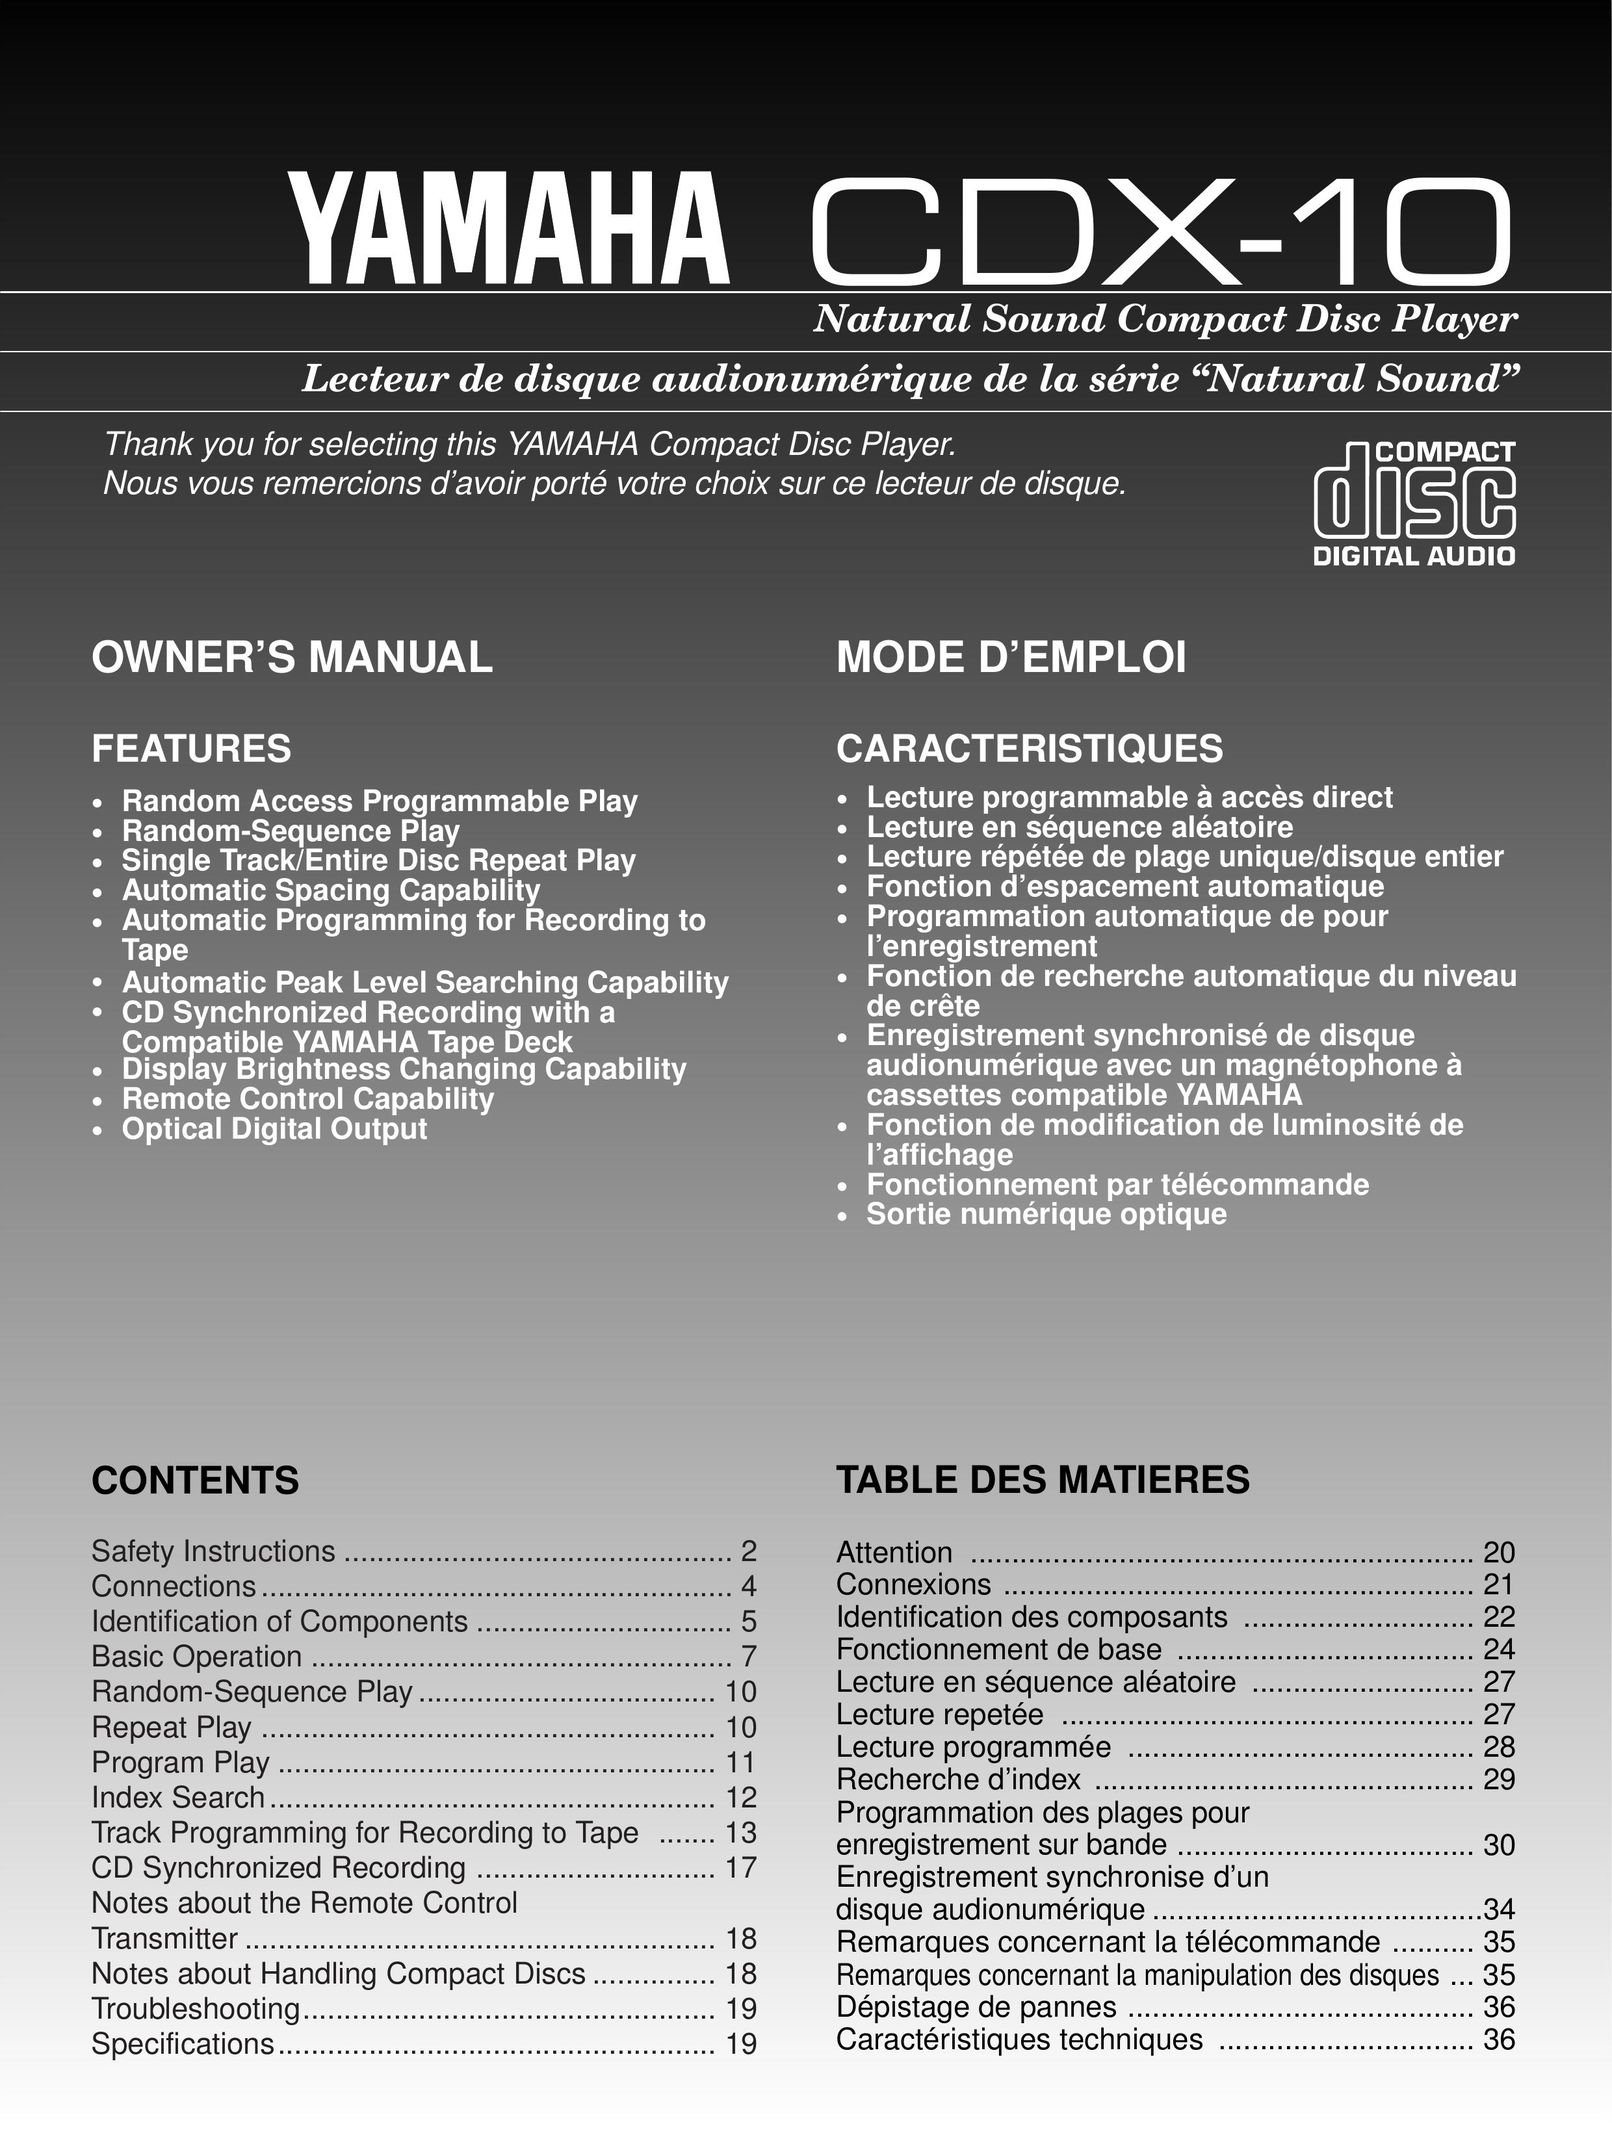 Yamaha CDX-10 CD Player User Manual